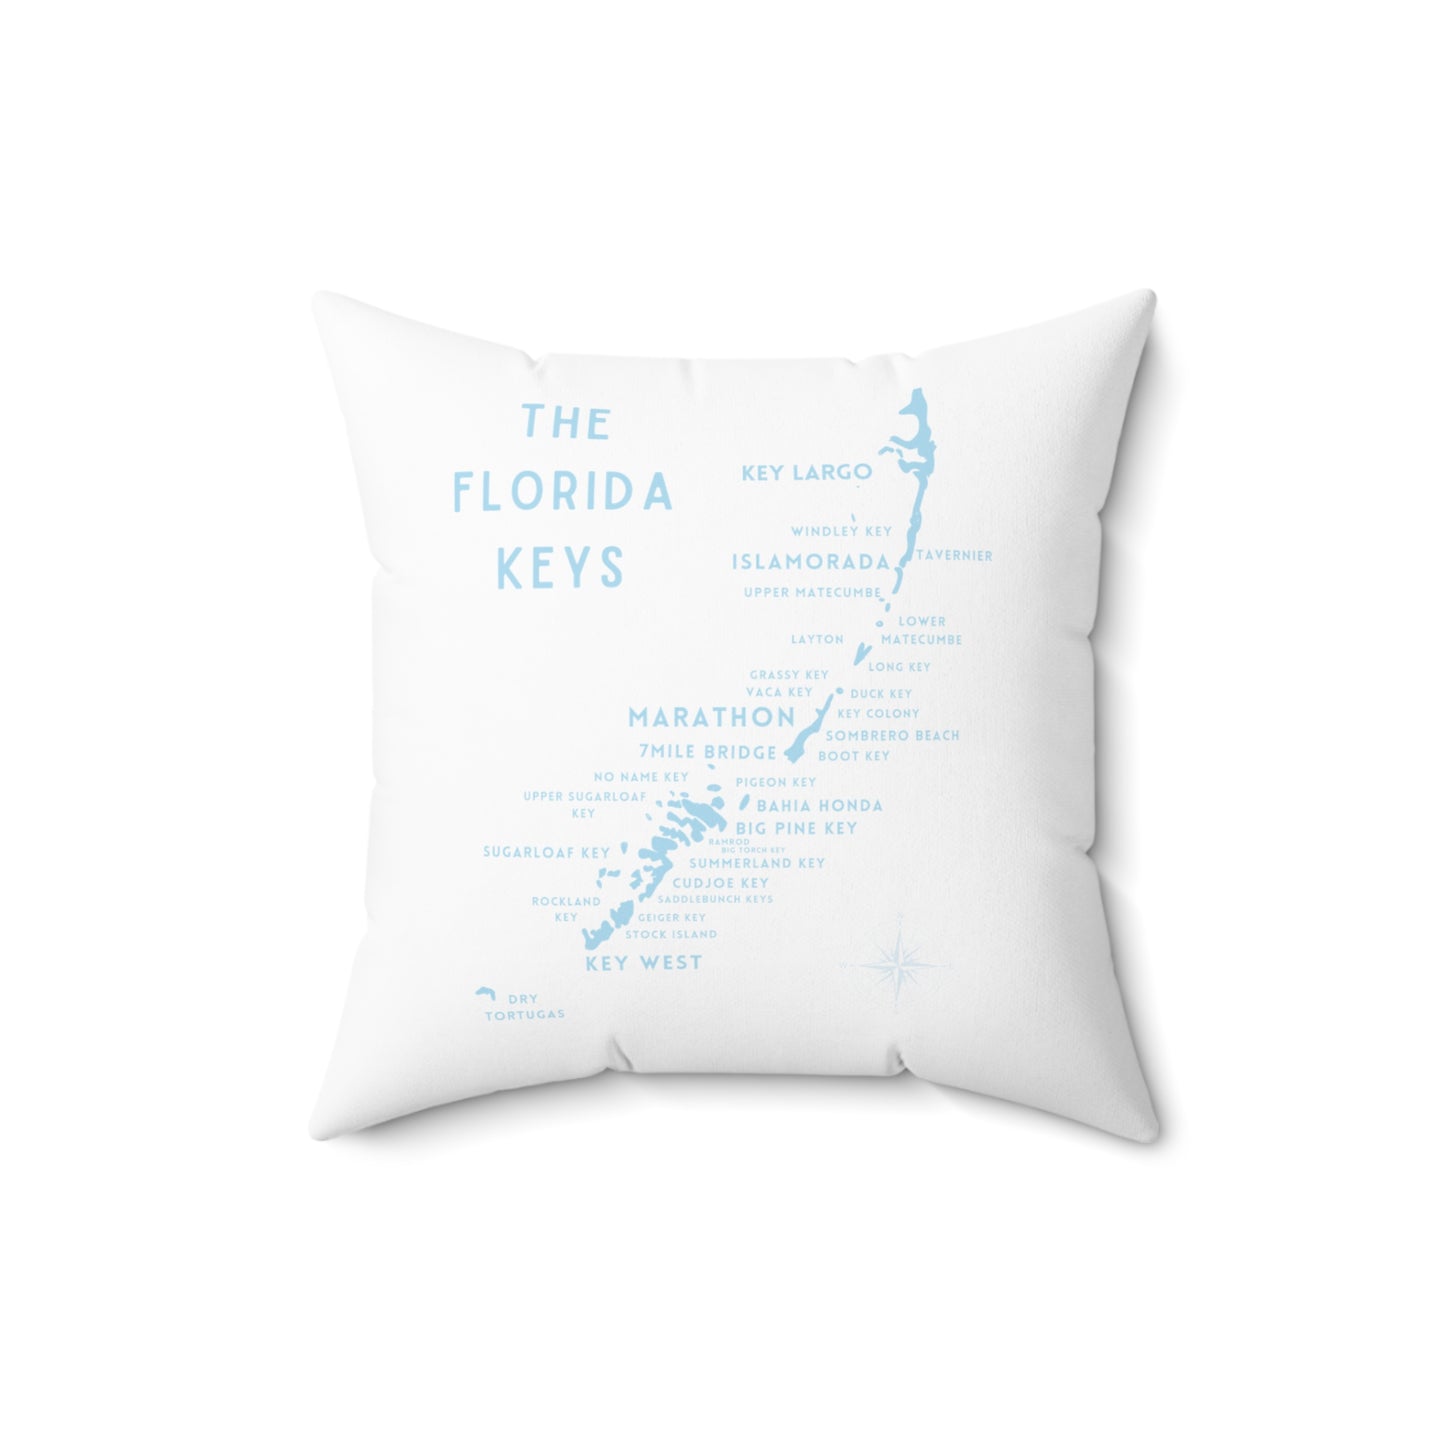 Florida Keys Map - throw pillow - white with blue - four sizes